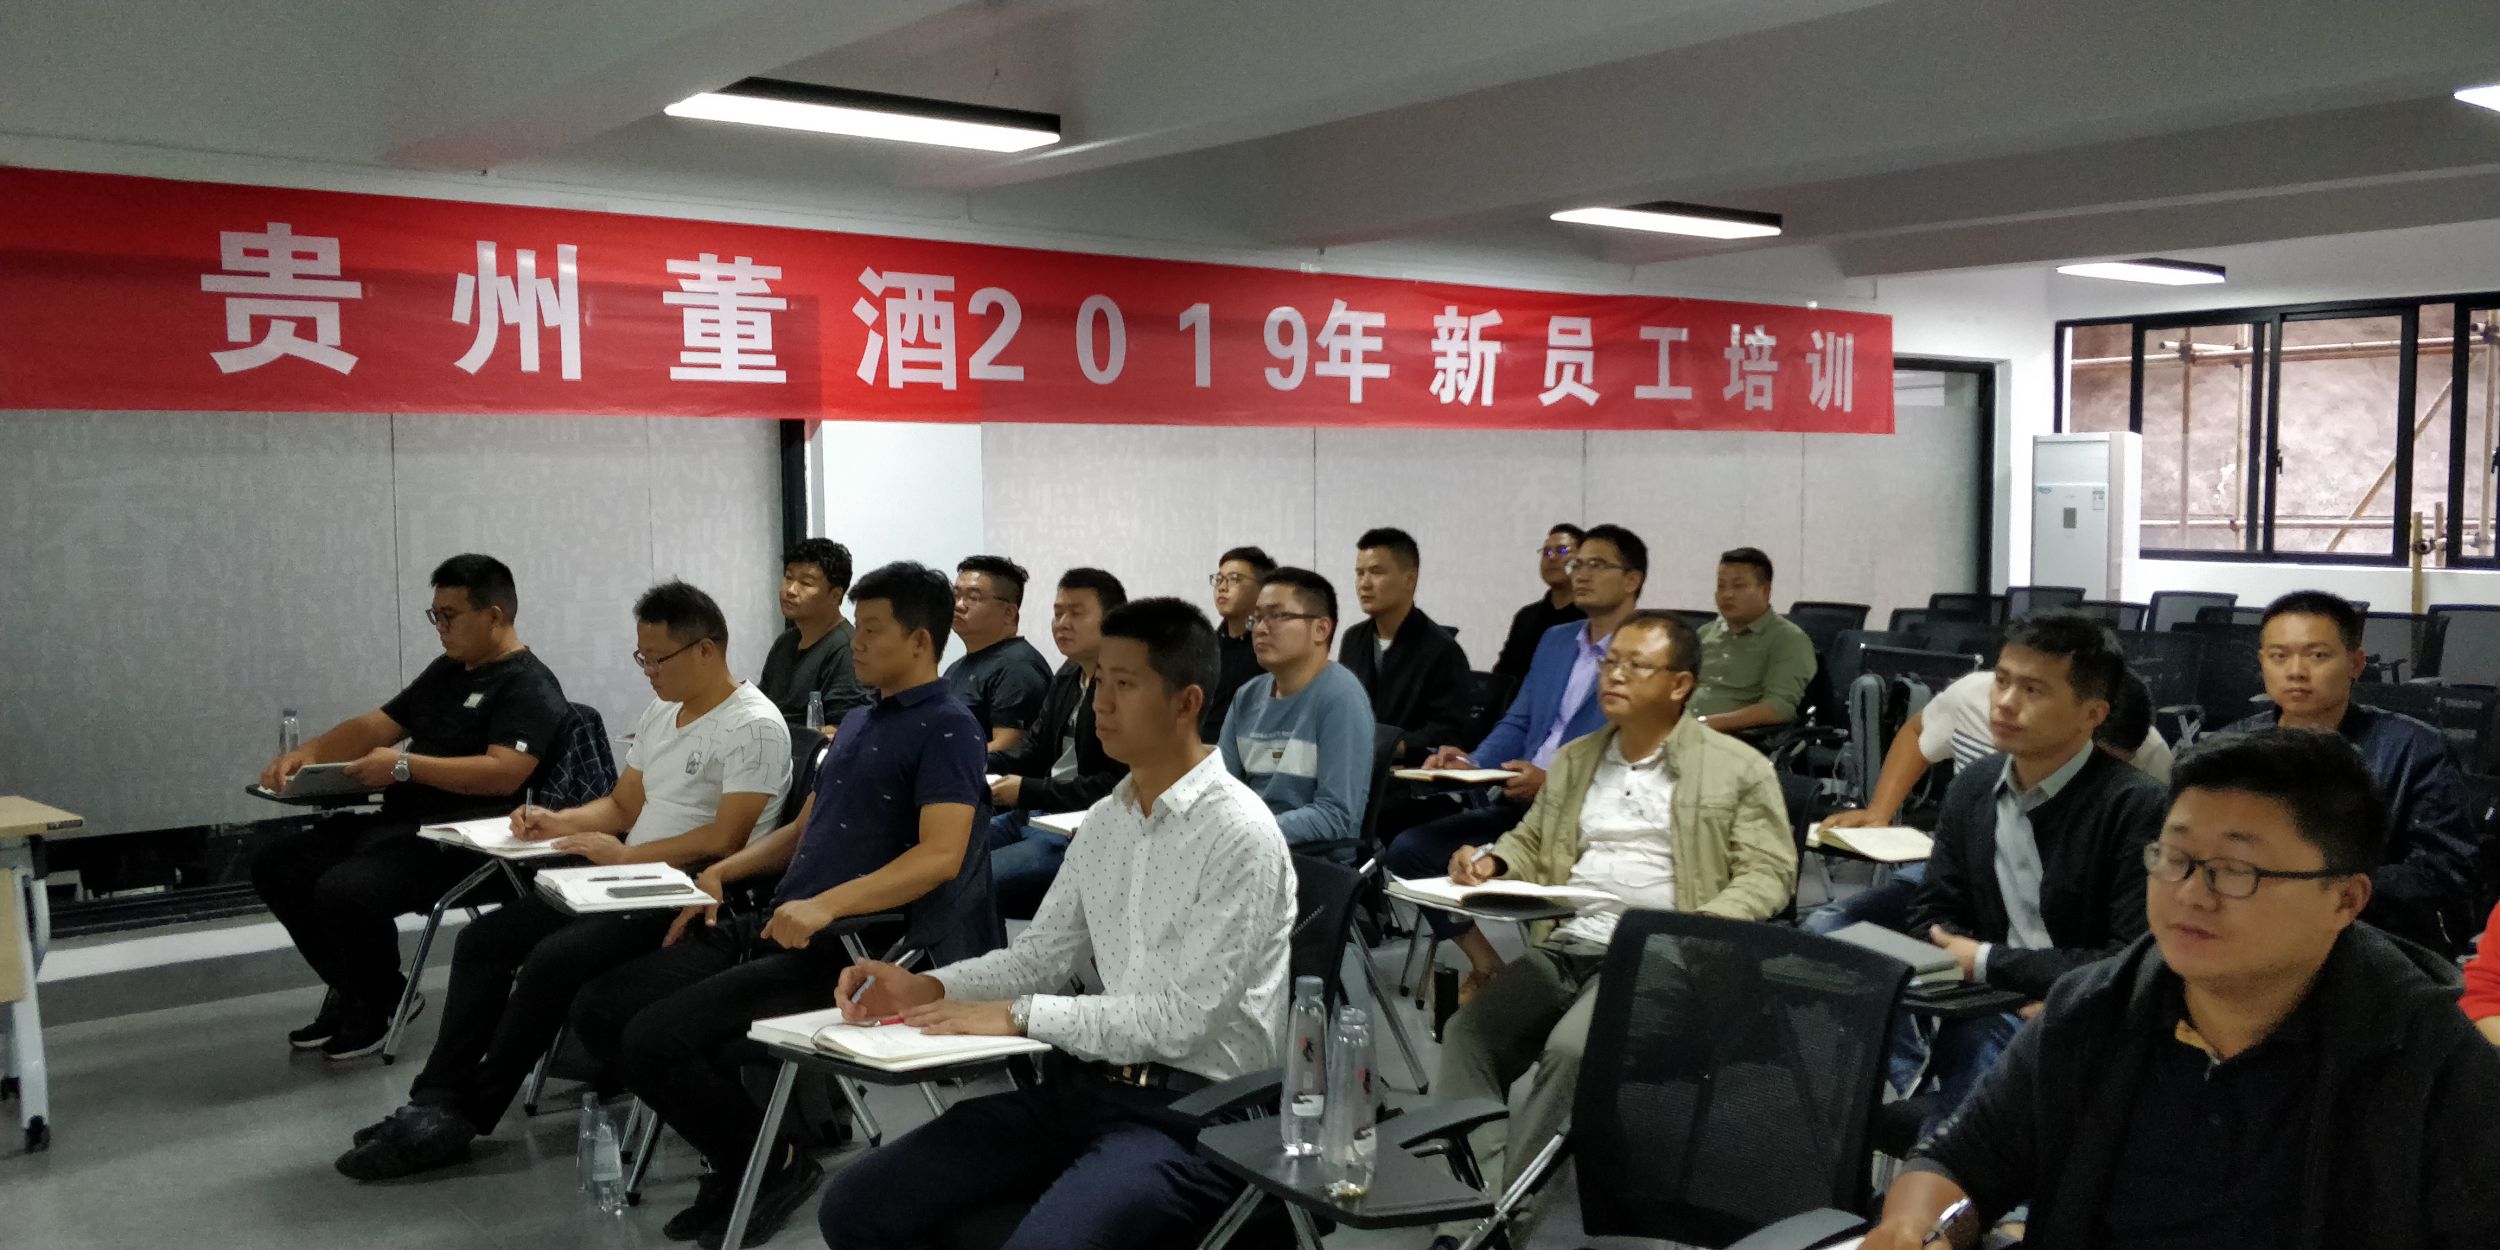 贵州董酒销售有限公司2019年第7期新员工培训